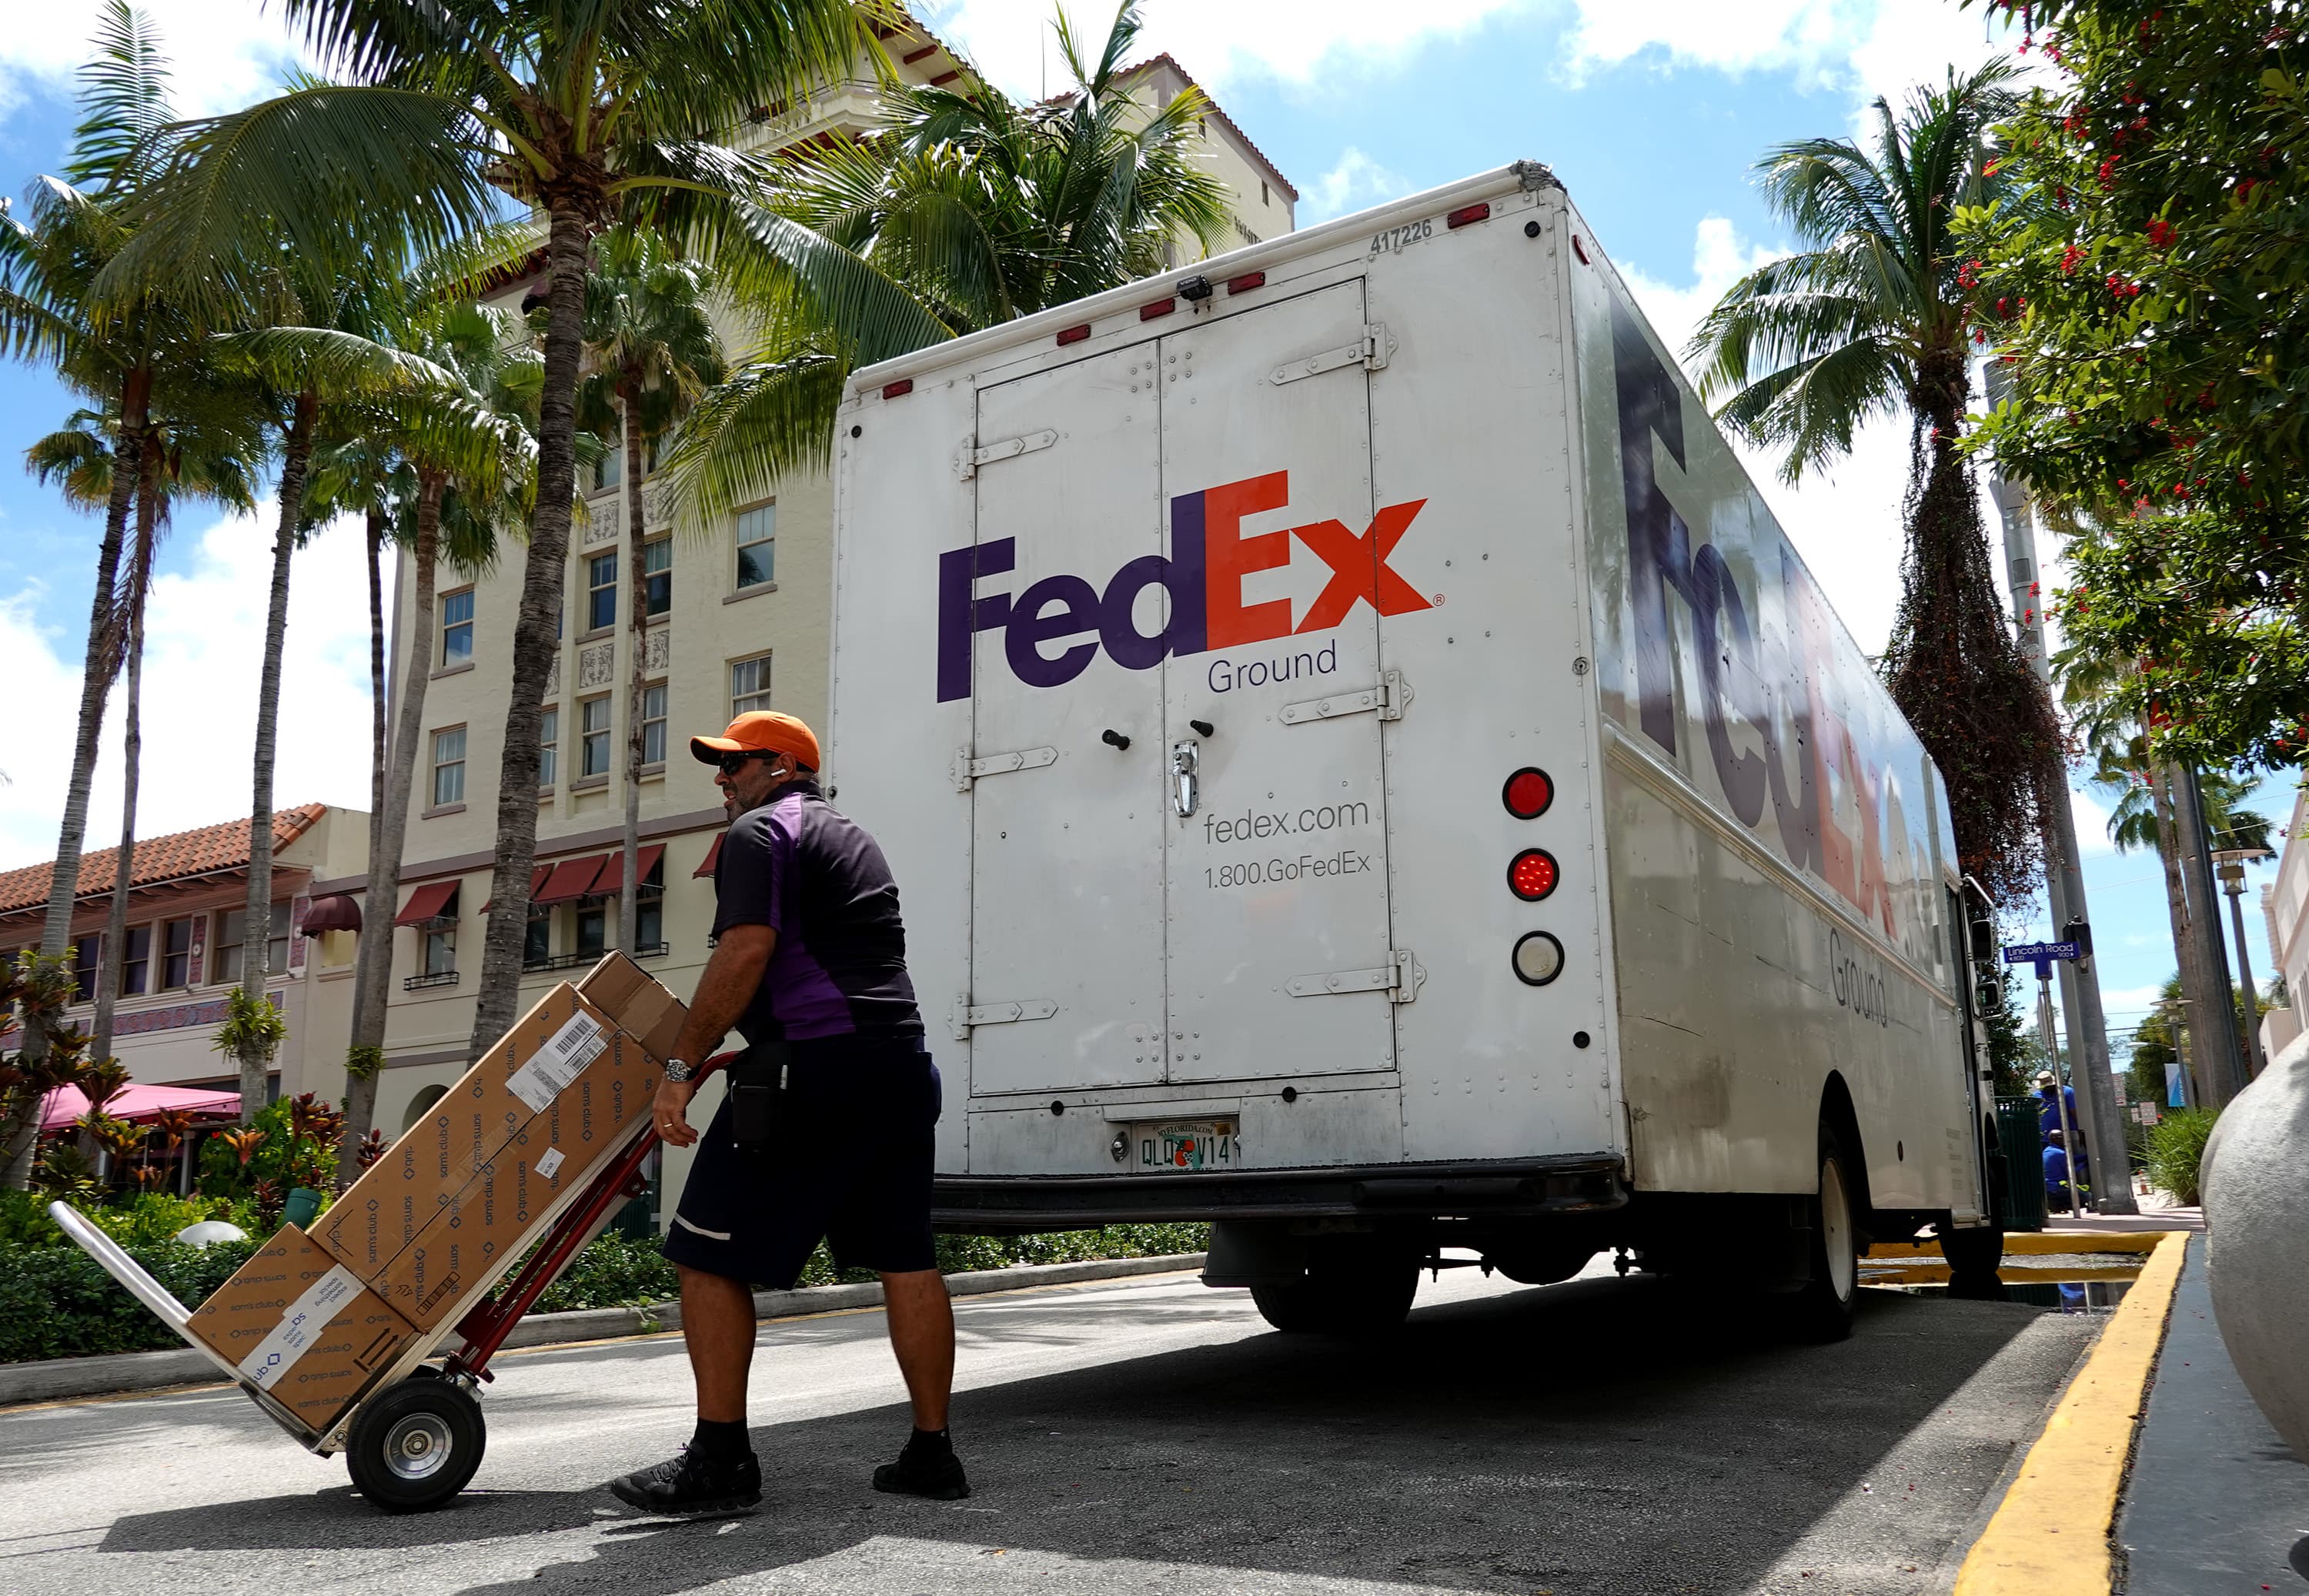 Les sombres perspectives de FedEx sont-elles un signal d'alarme pour les investisseurs ?  Voici ce que disent les pros